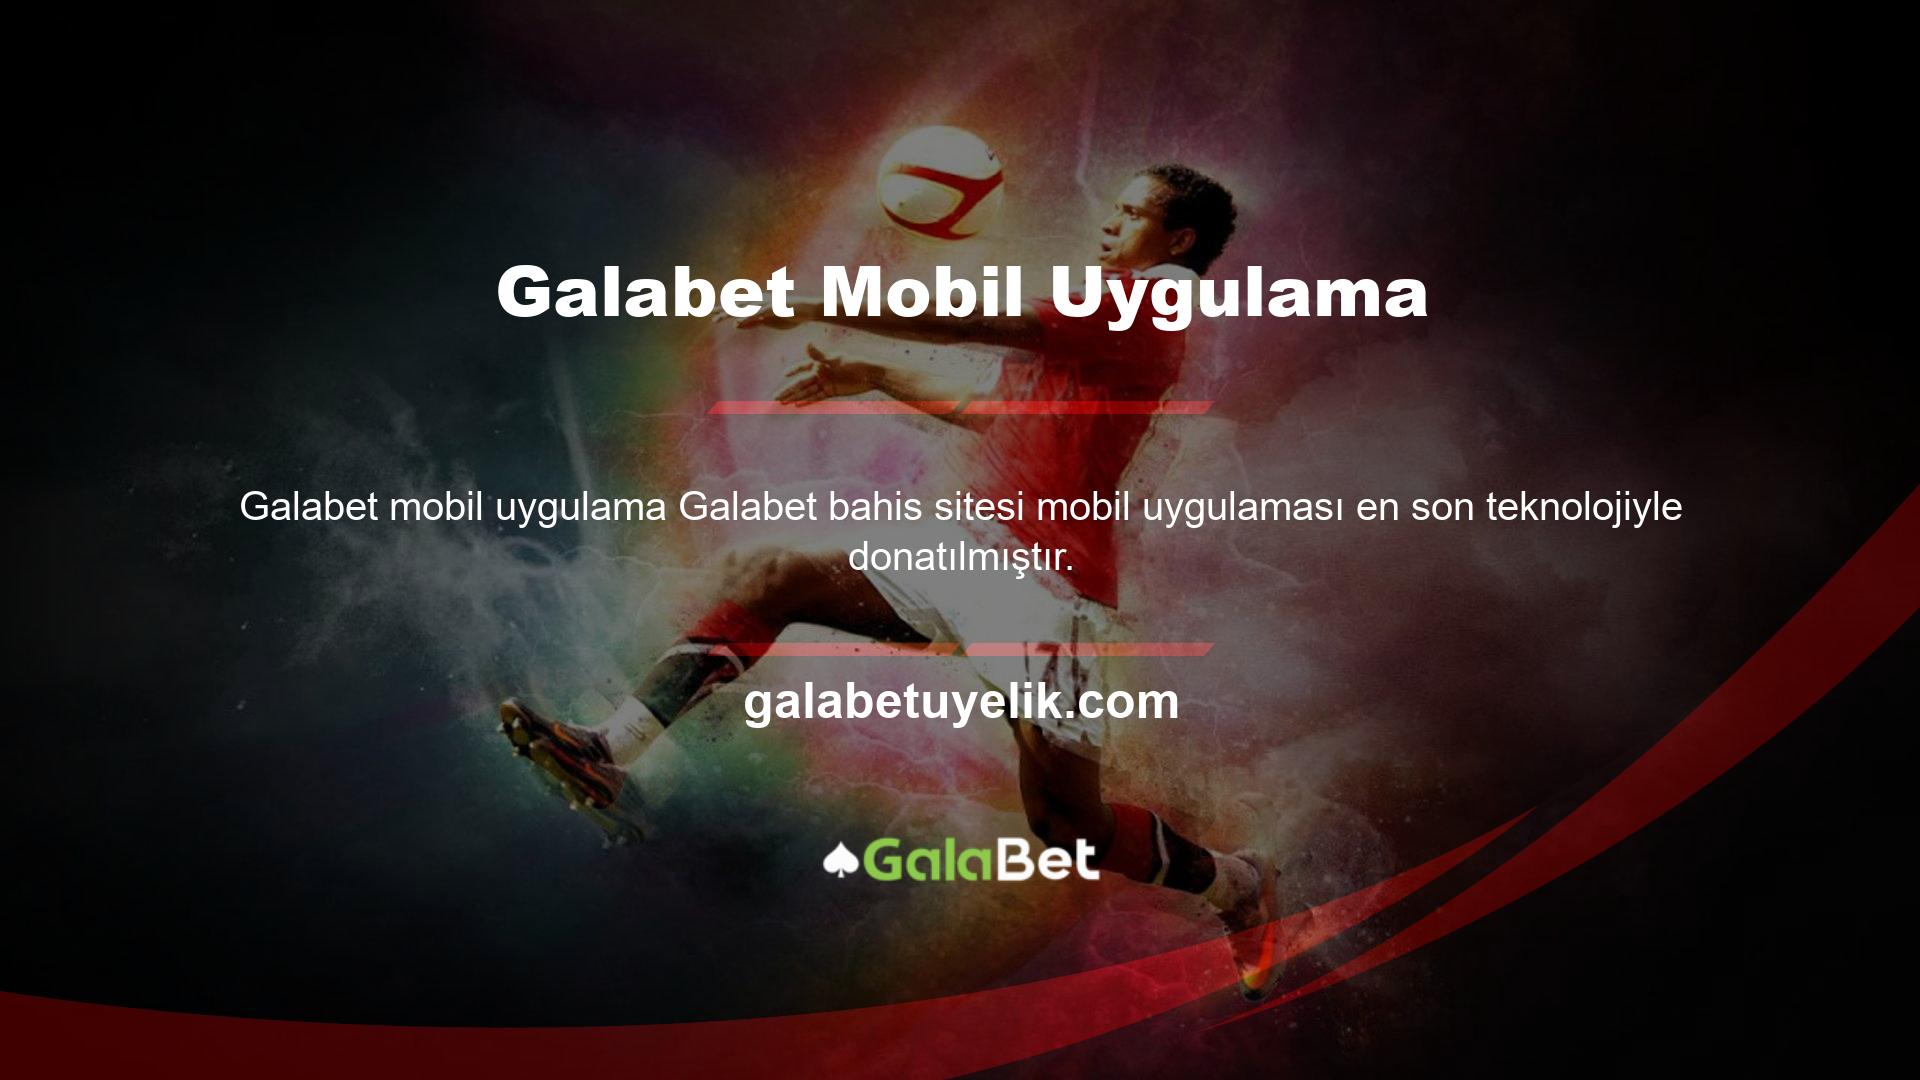 Bu nedenle yeni Galabet adresleriyle üye olan kullanıcılar da mobil uygulamadan faydalanabilmektedir